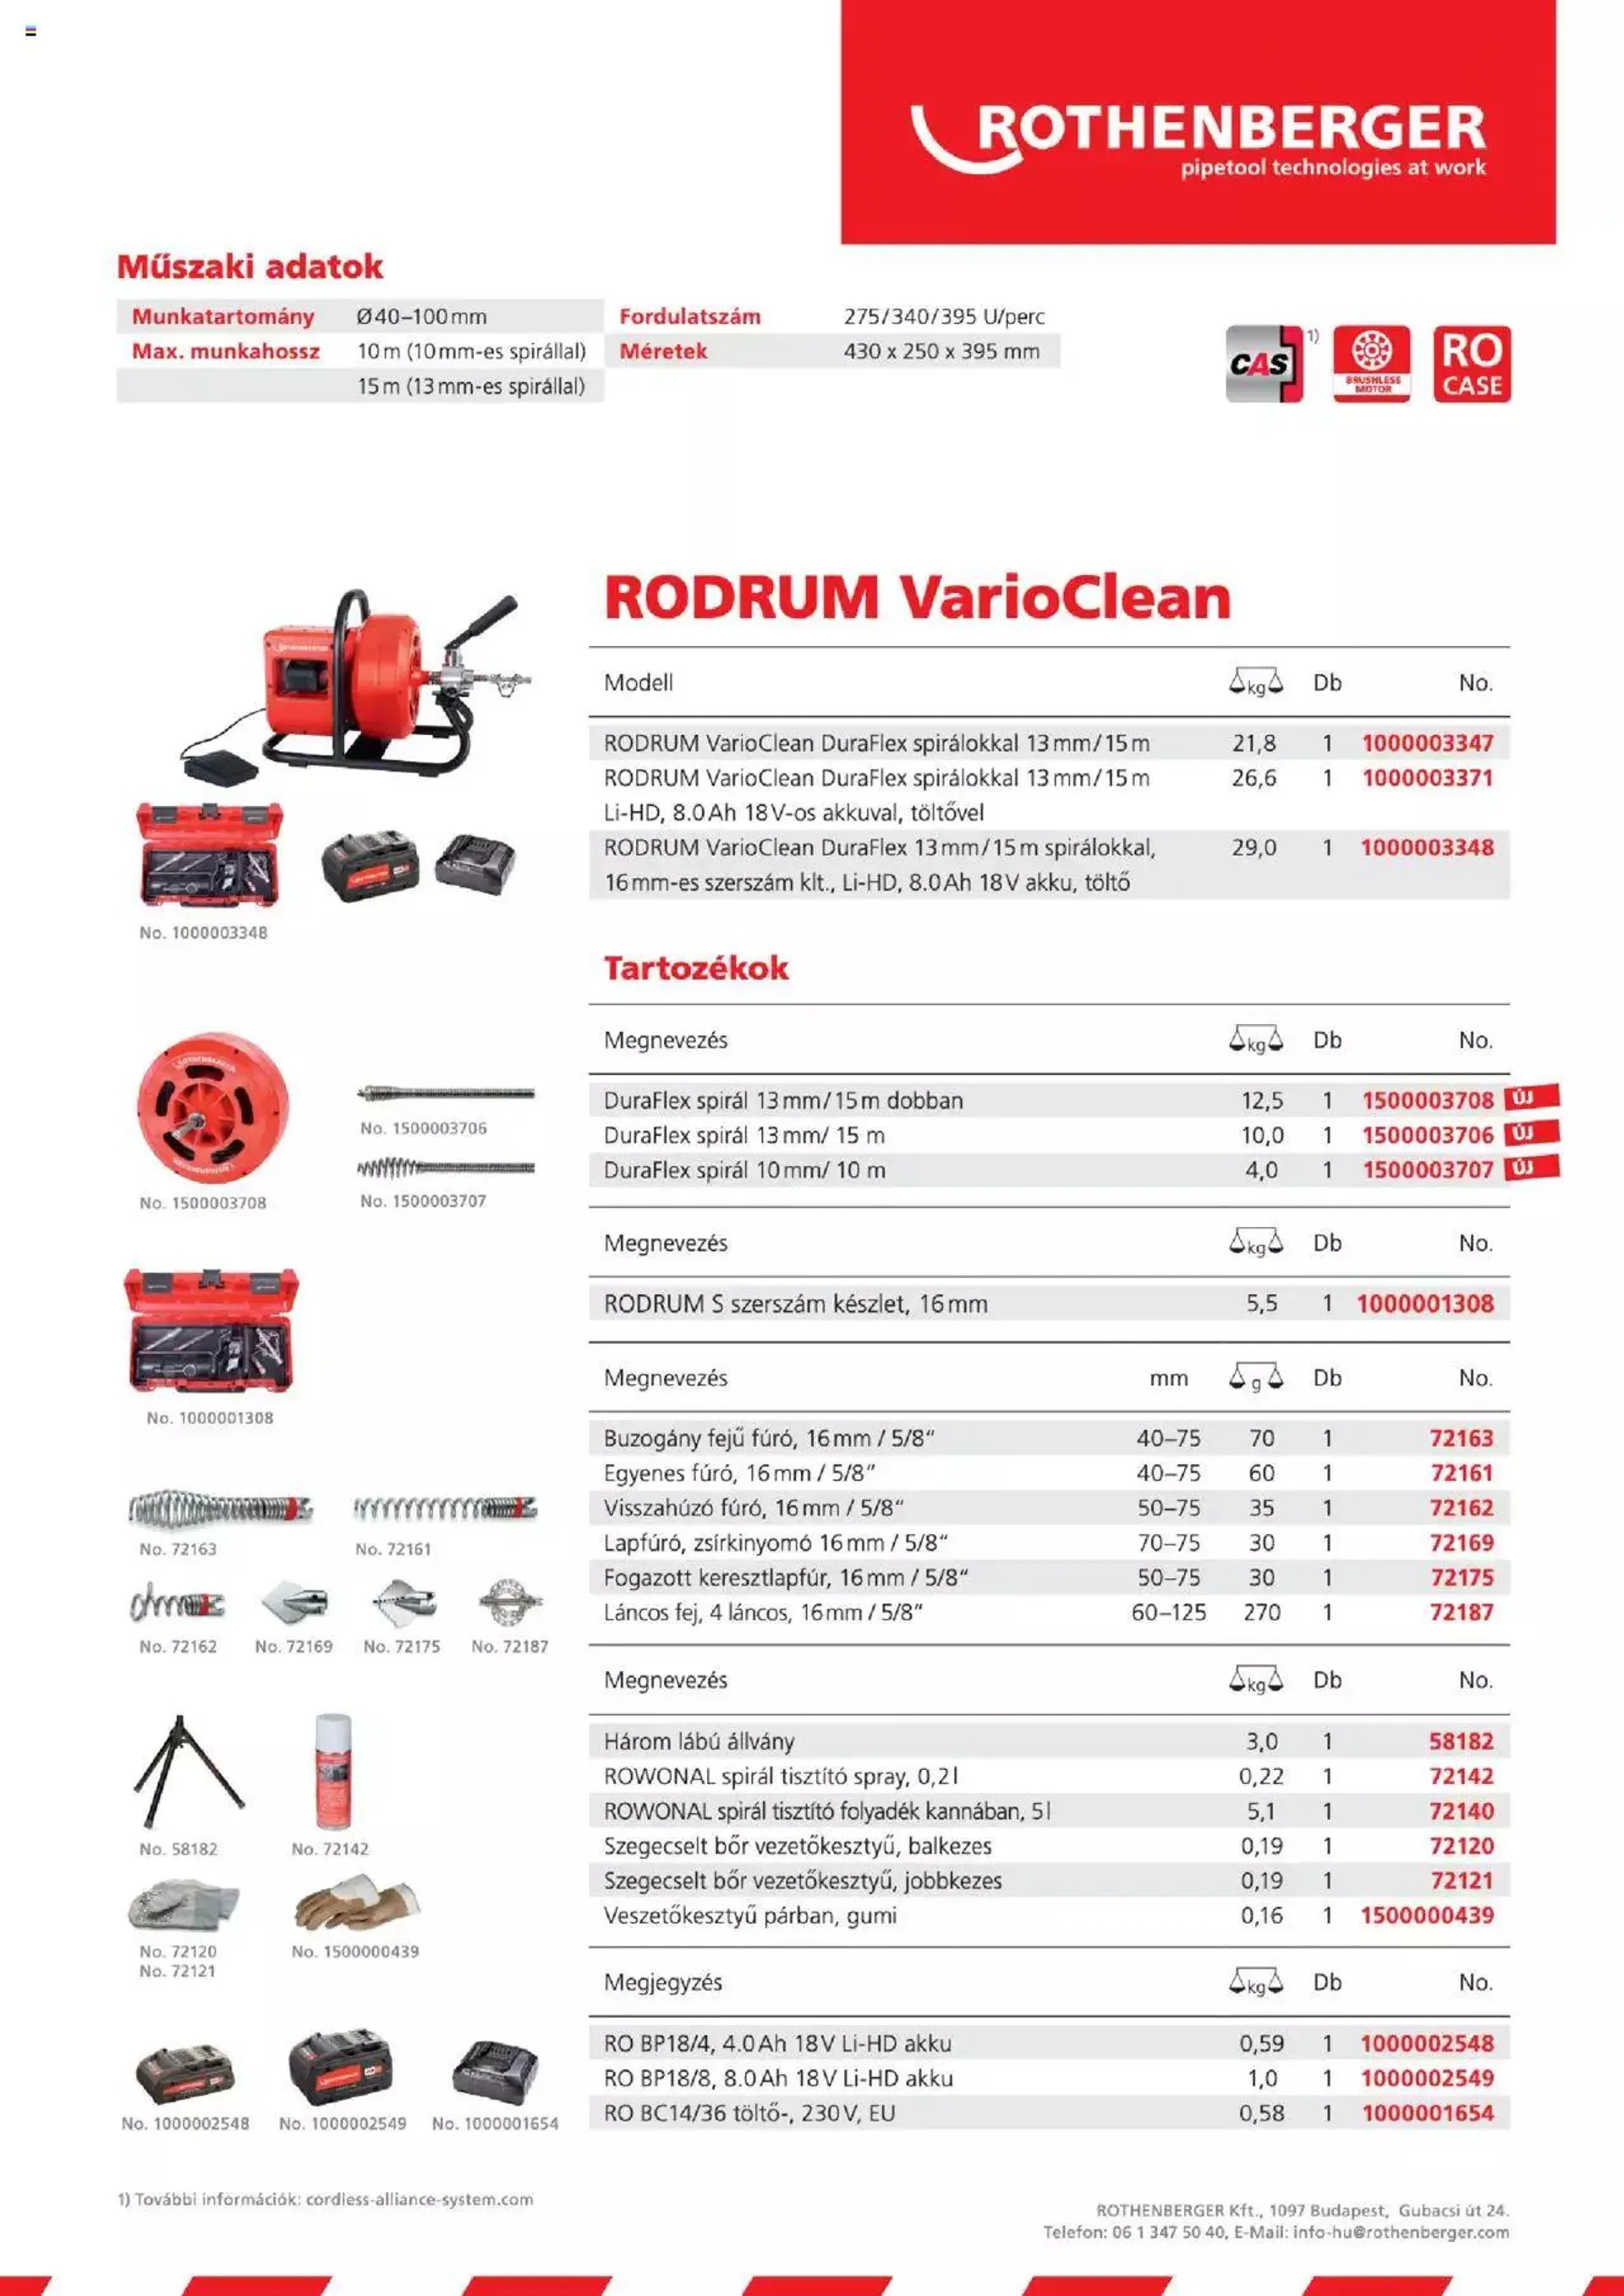 Rothenberger - Rodrum VarioClean - 1